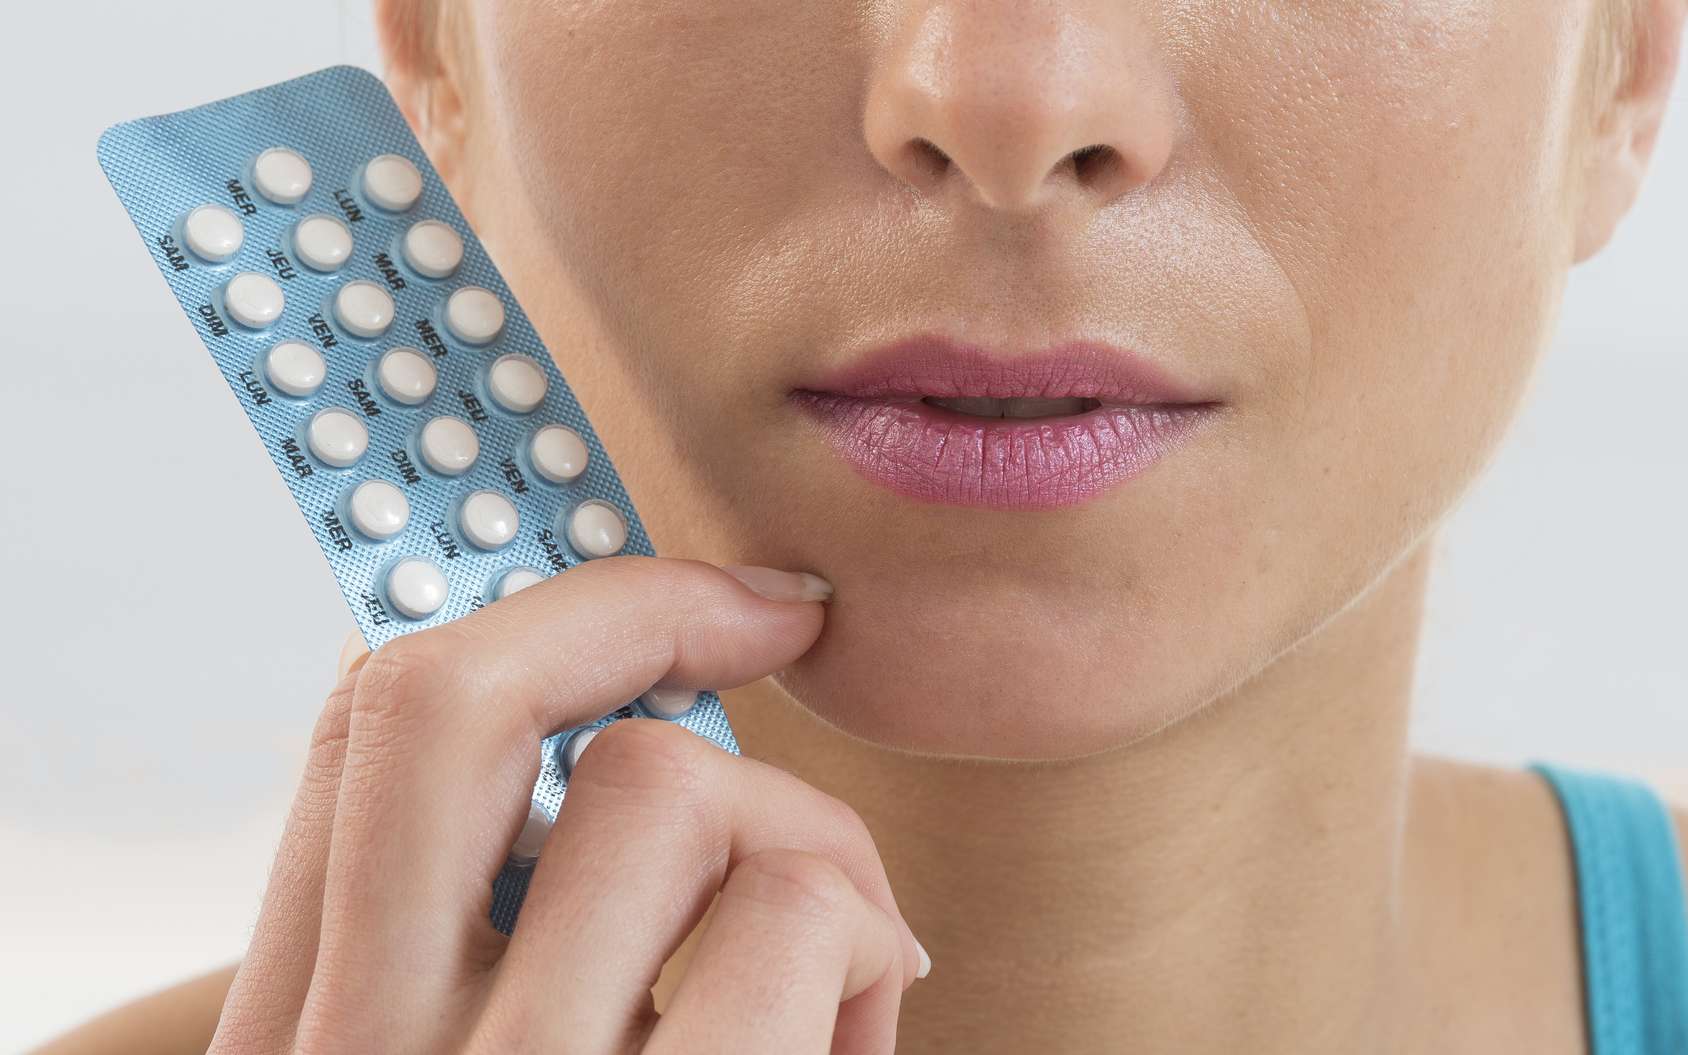 La pilule est la méthode contraceptive la plus utilisée en France. © JPC-PROD, Fotolia